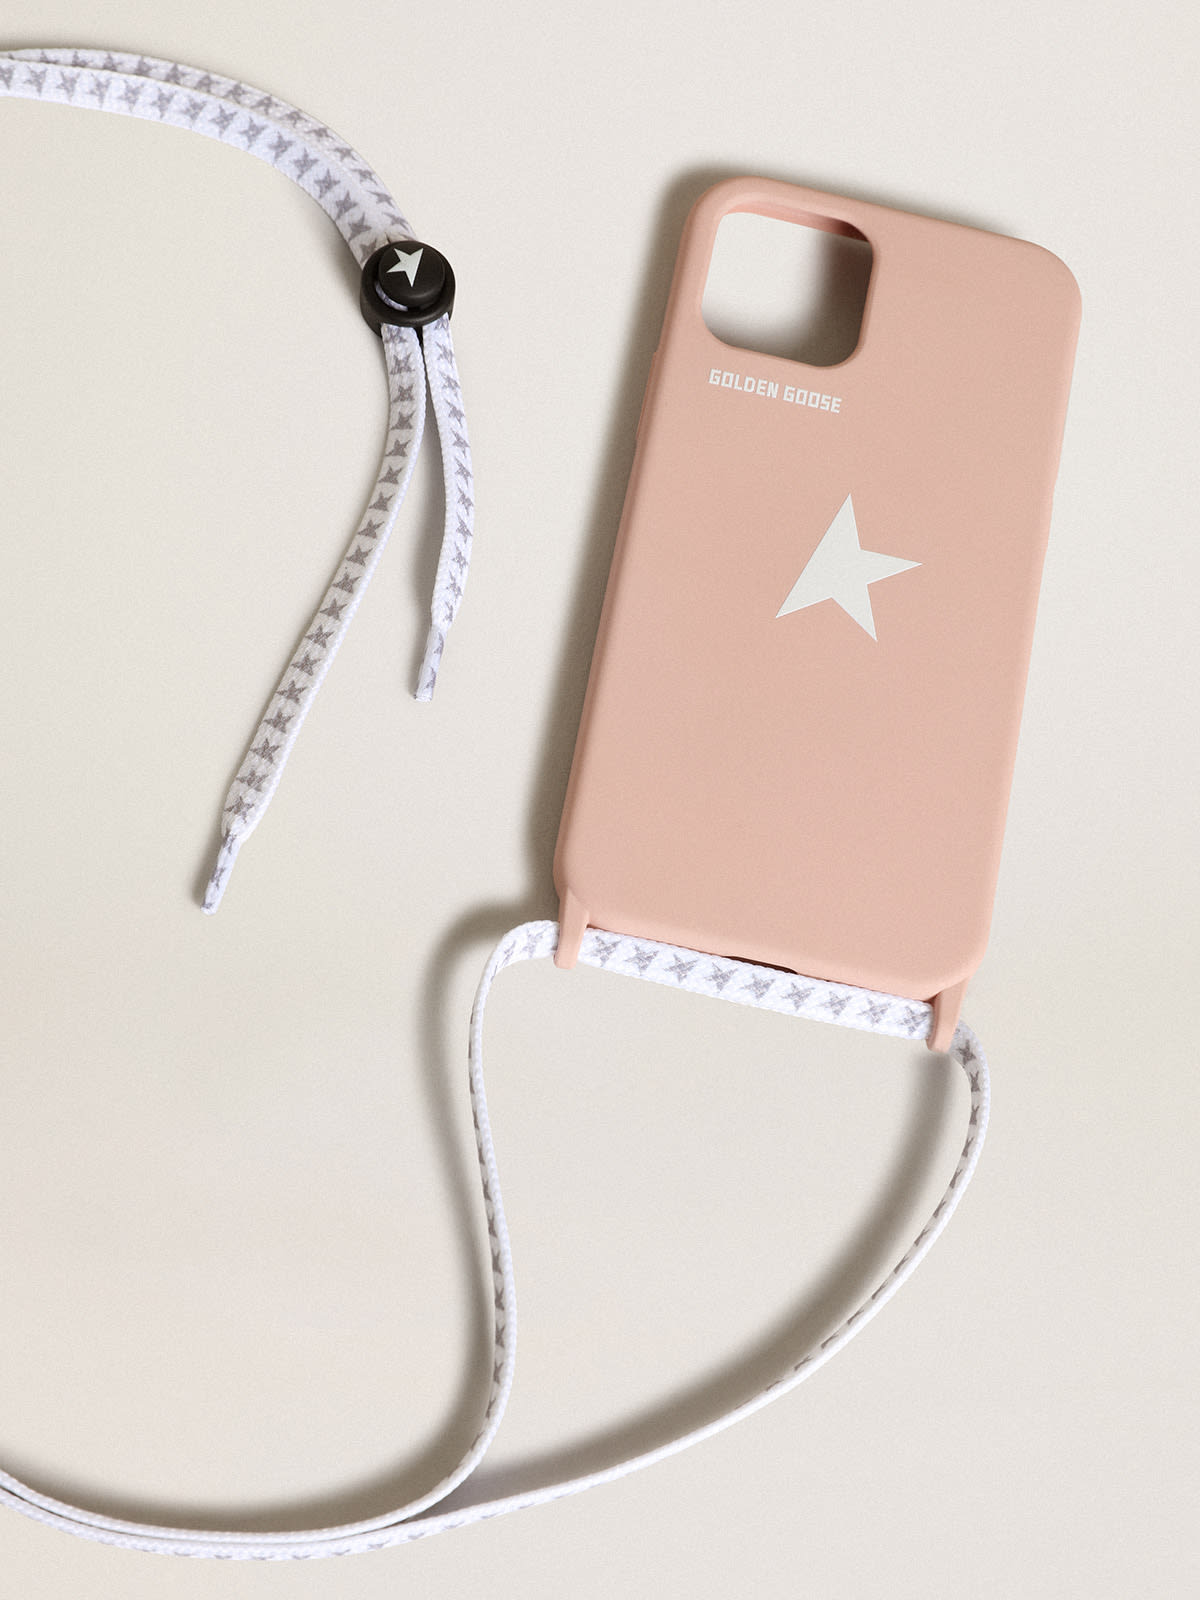 Golden Goose - Coque pour iPhone 12 et iPhone 12 Pro Max rose clair avec logo blanc contrasté et lacets griffés in 